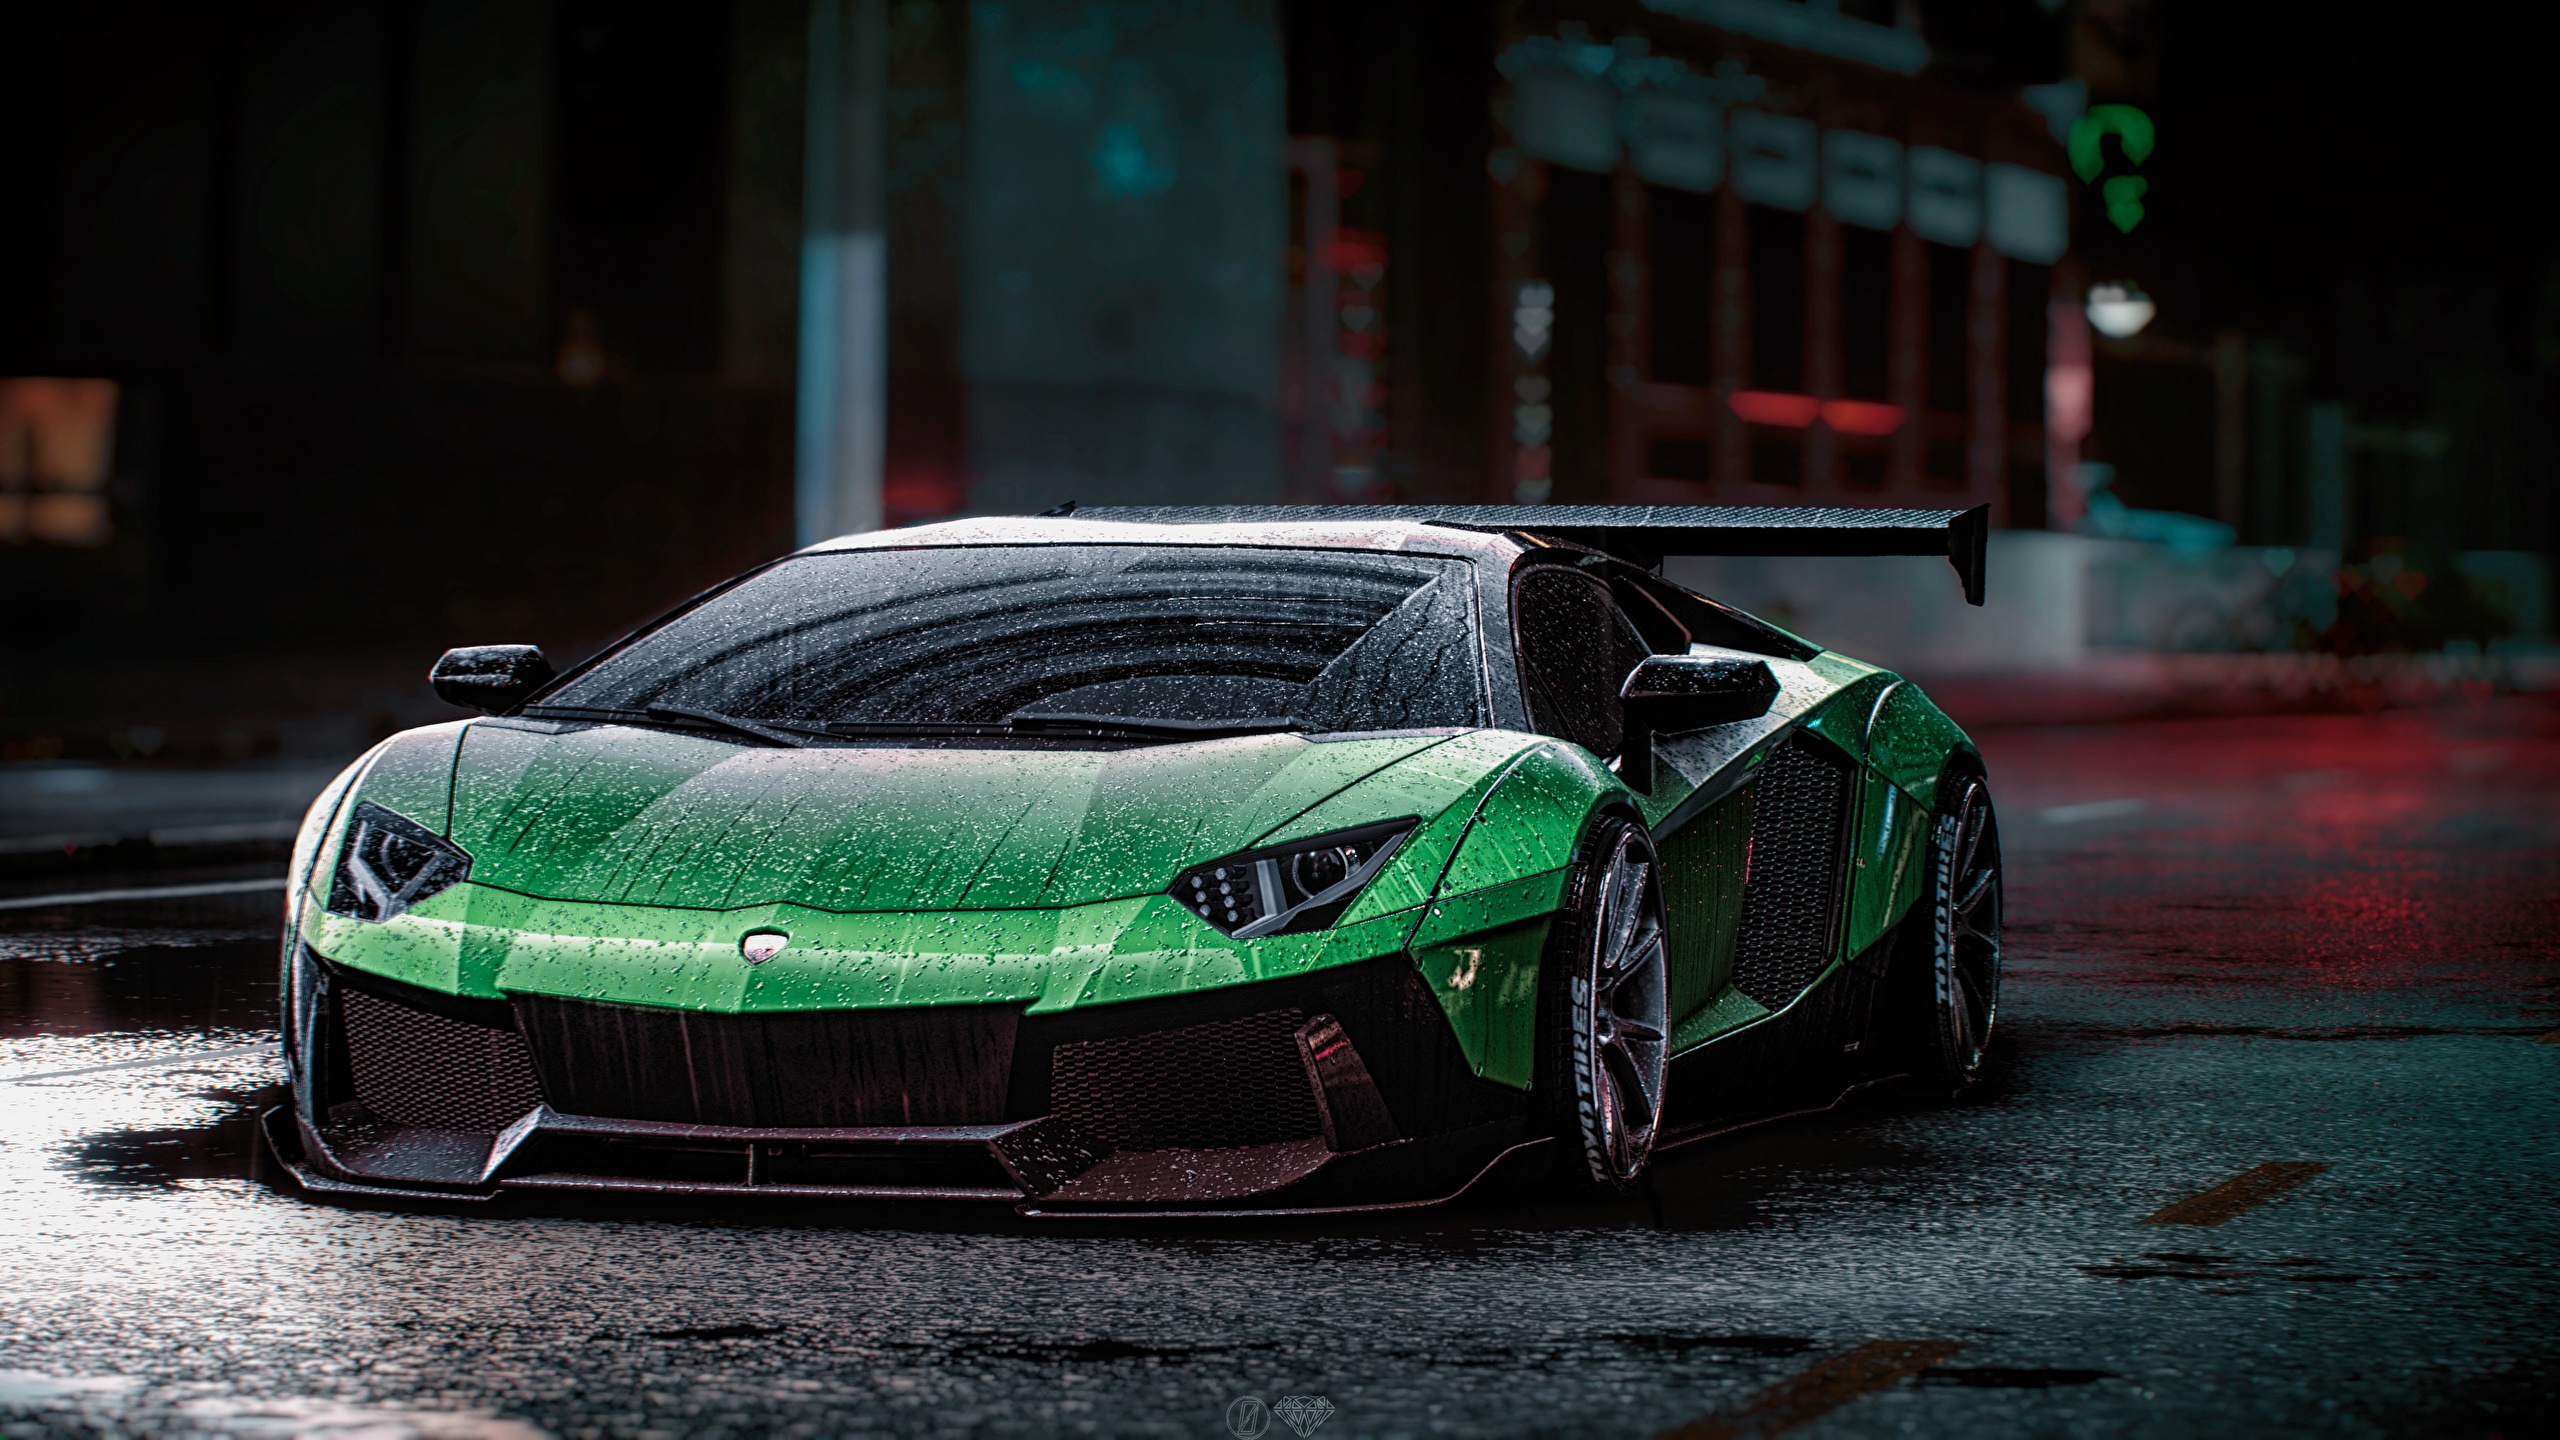 Fondos de Pantalla 2560x1440 Lamborghini Need for Speed Aventador Liberty  Walk, 2015 game art Verde Gota de agua Coches Juegos descargar imagenes